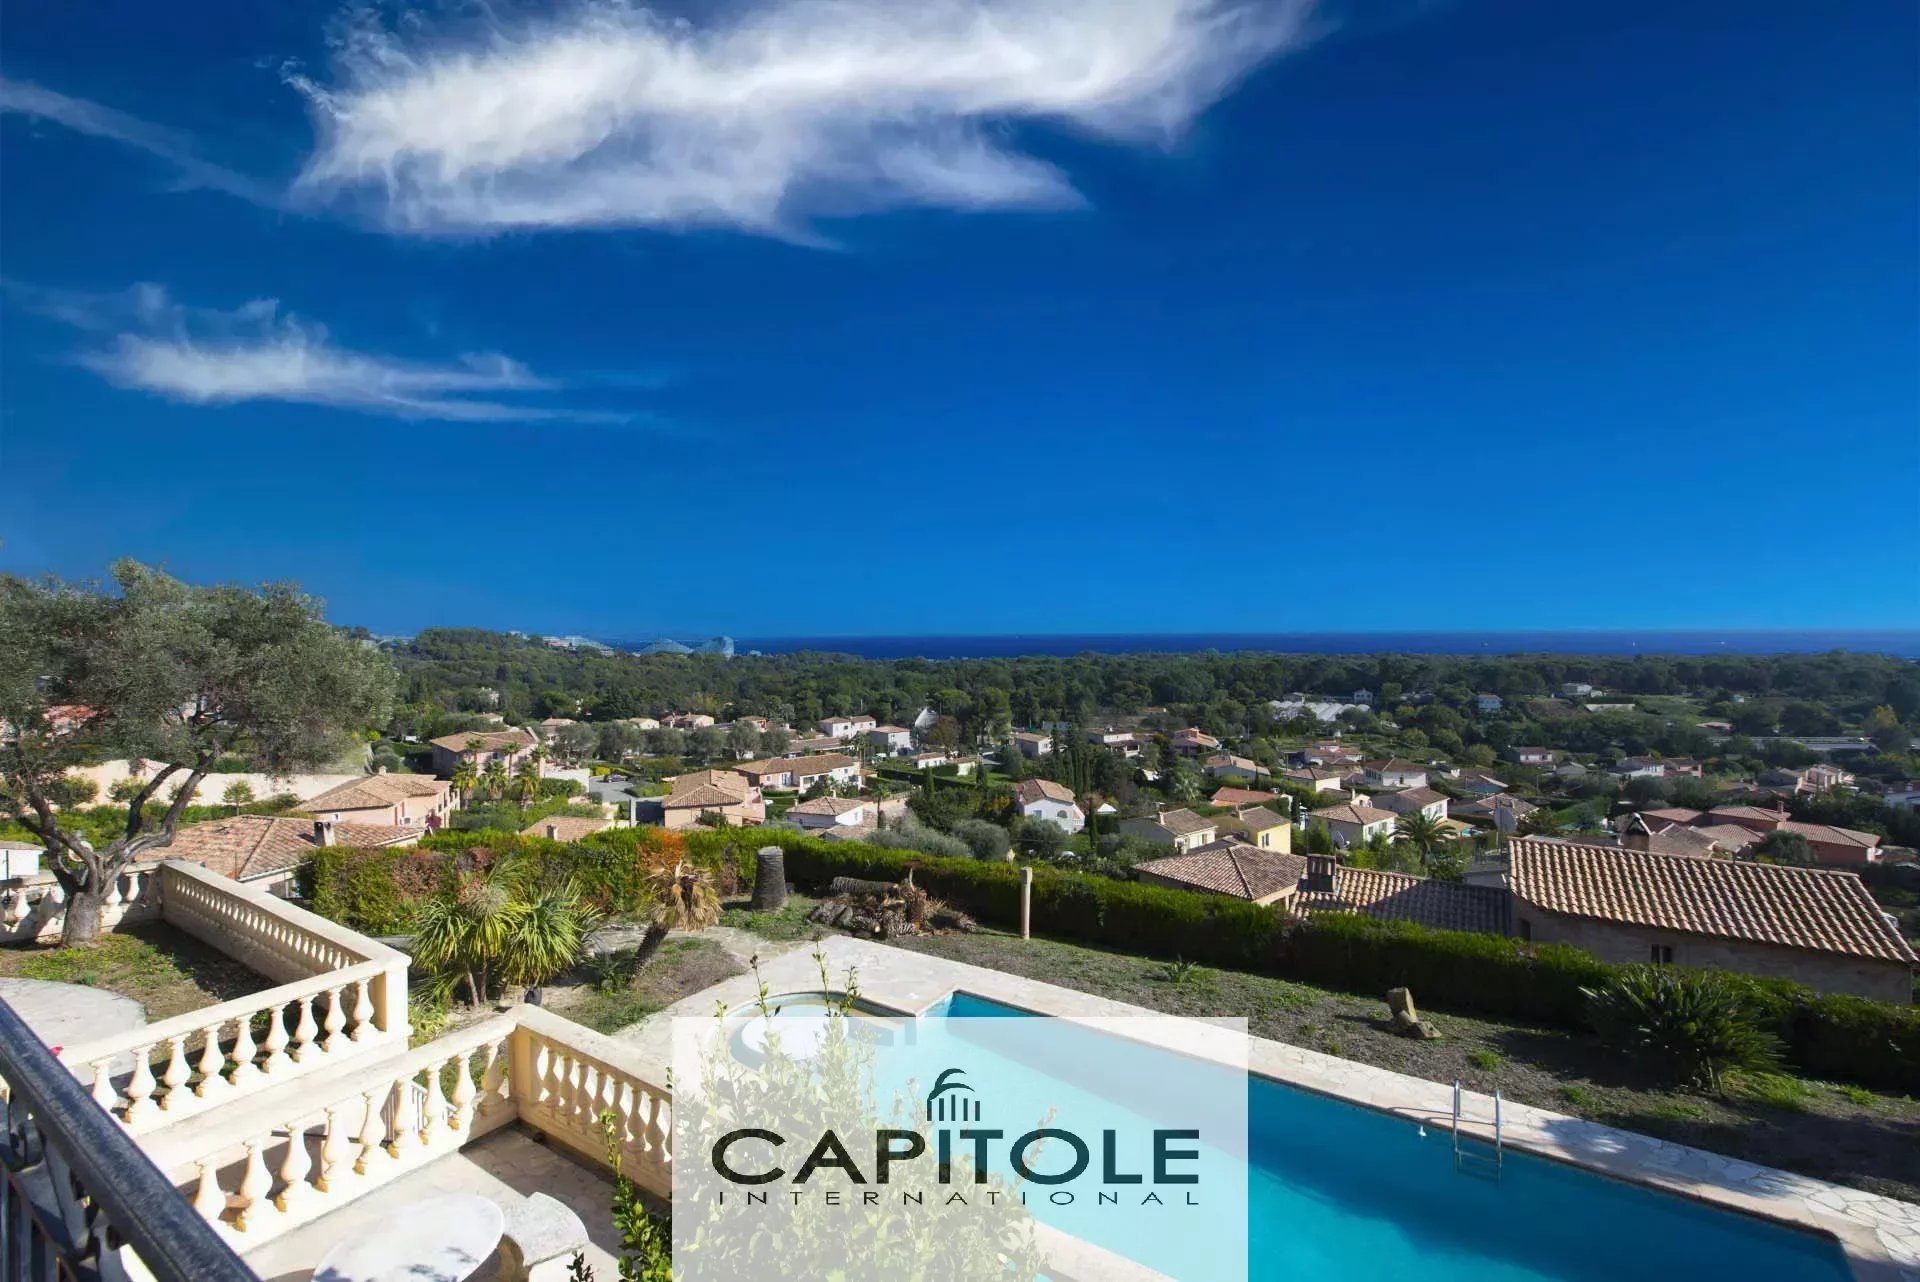 Biot- A vendre belle et grande villa de172 m² environ  avec piscine et vue mer